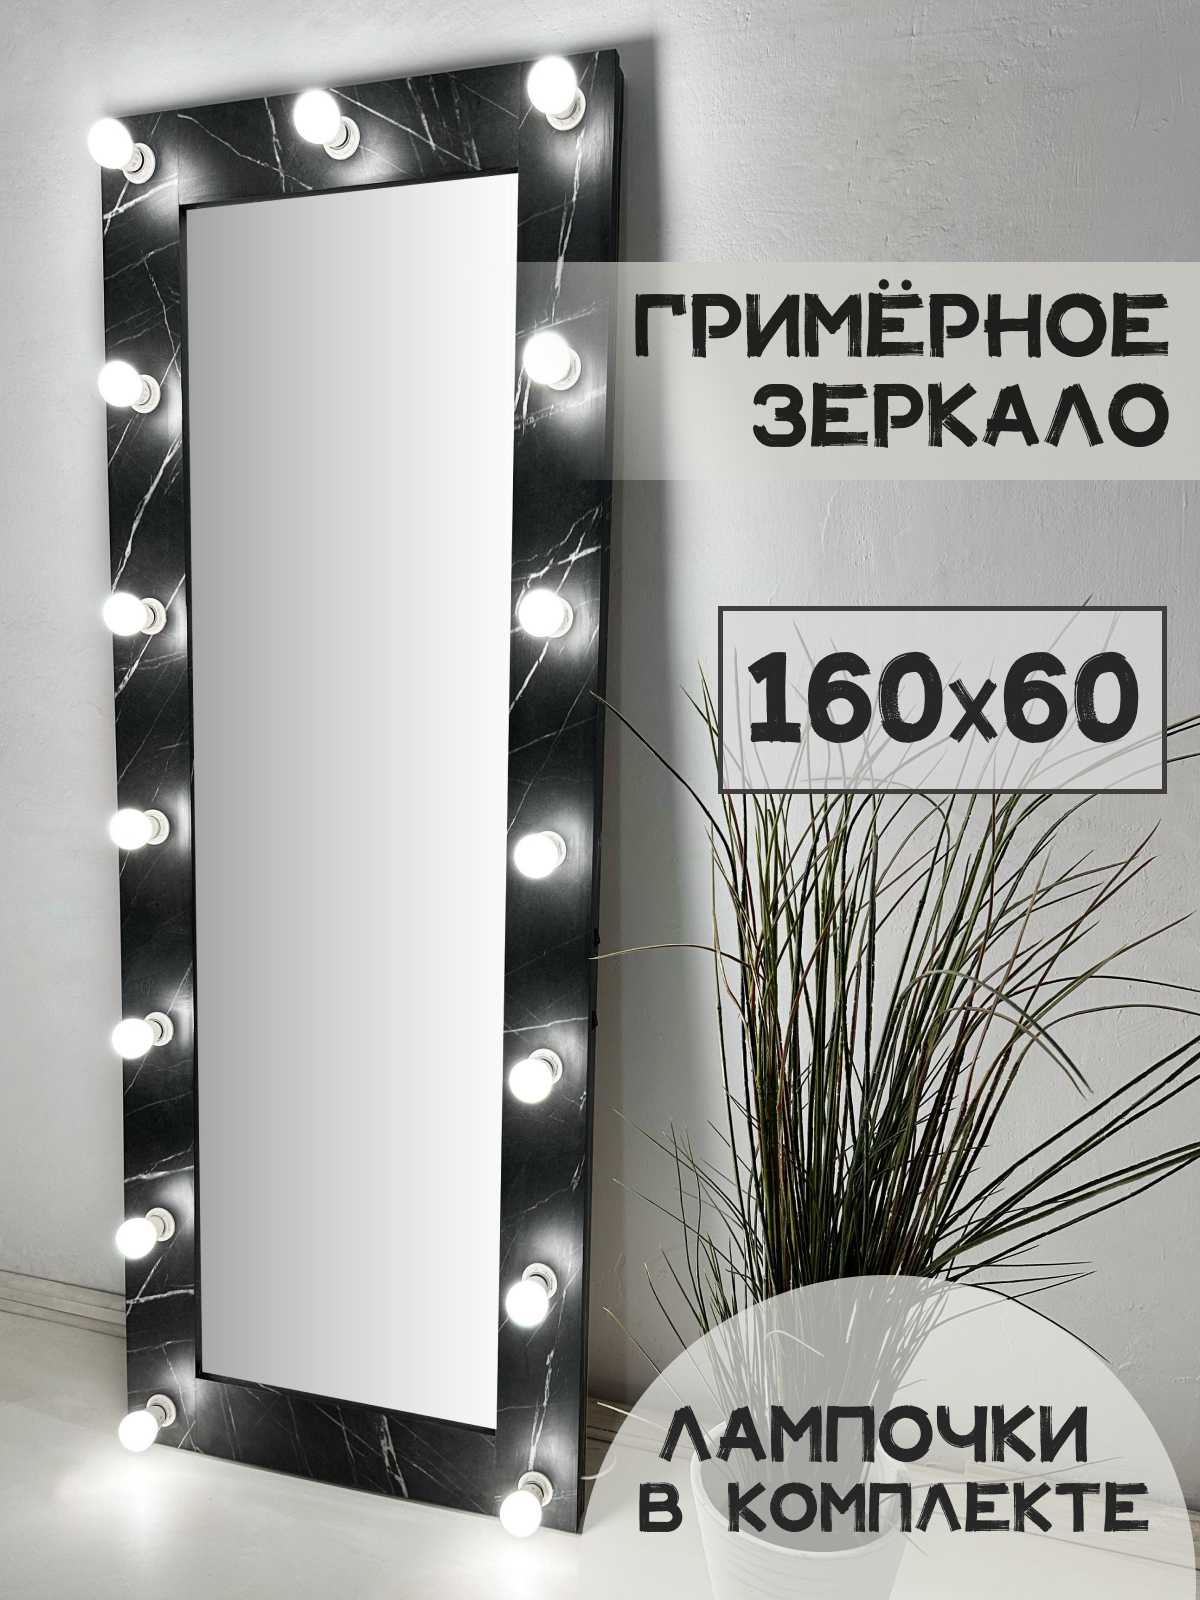 Гримерное зеркало с лампочками BeautyUp 160/60